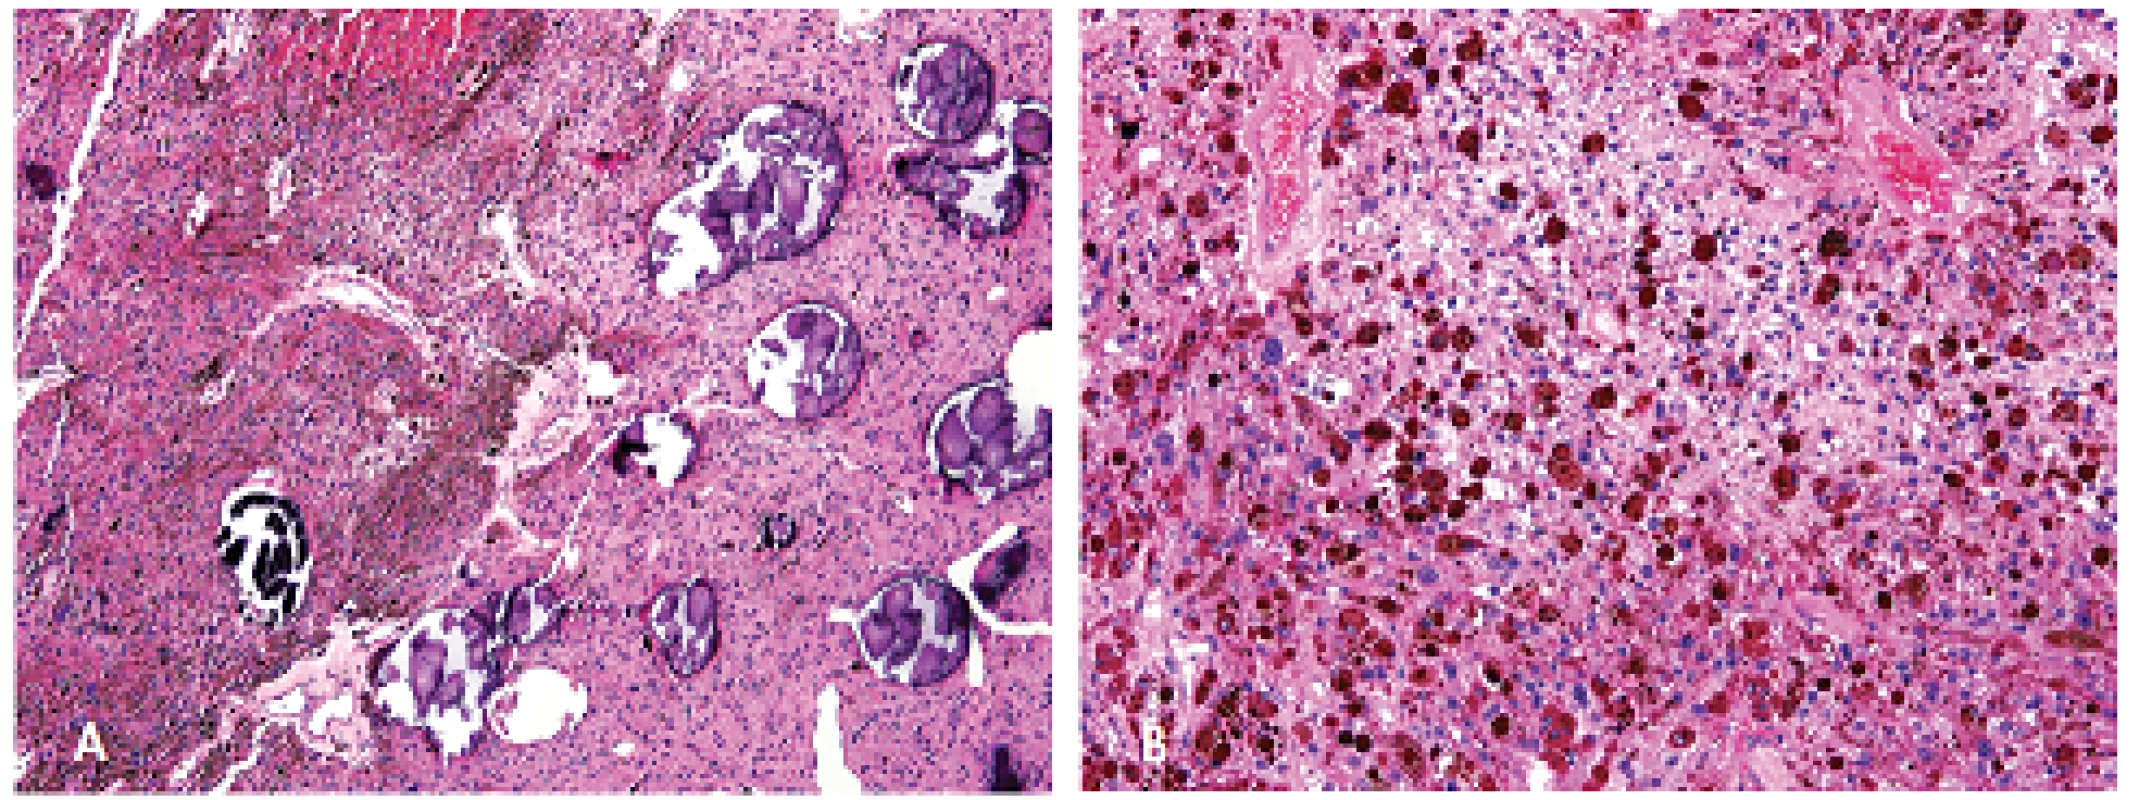 Psamomatózní melanotický schwannom složený z epiteloidních buněk s melaninovými granuly v cytoplazmu a ložisek kalcifikovaných psamomatozních tělisek. Barveno hematoxylinem eozinem (A, zvětšení 100x; B, zvětšení 200x).